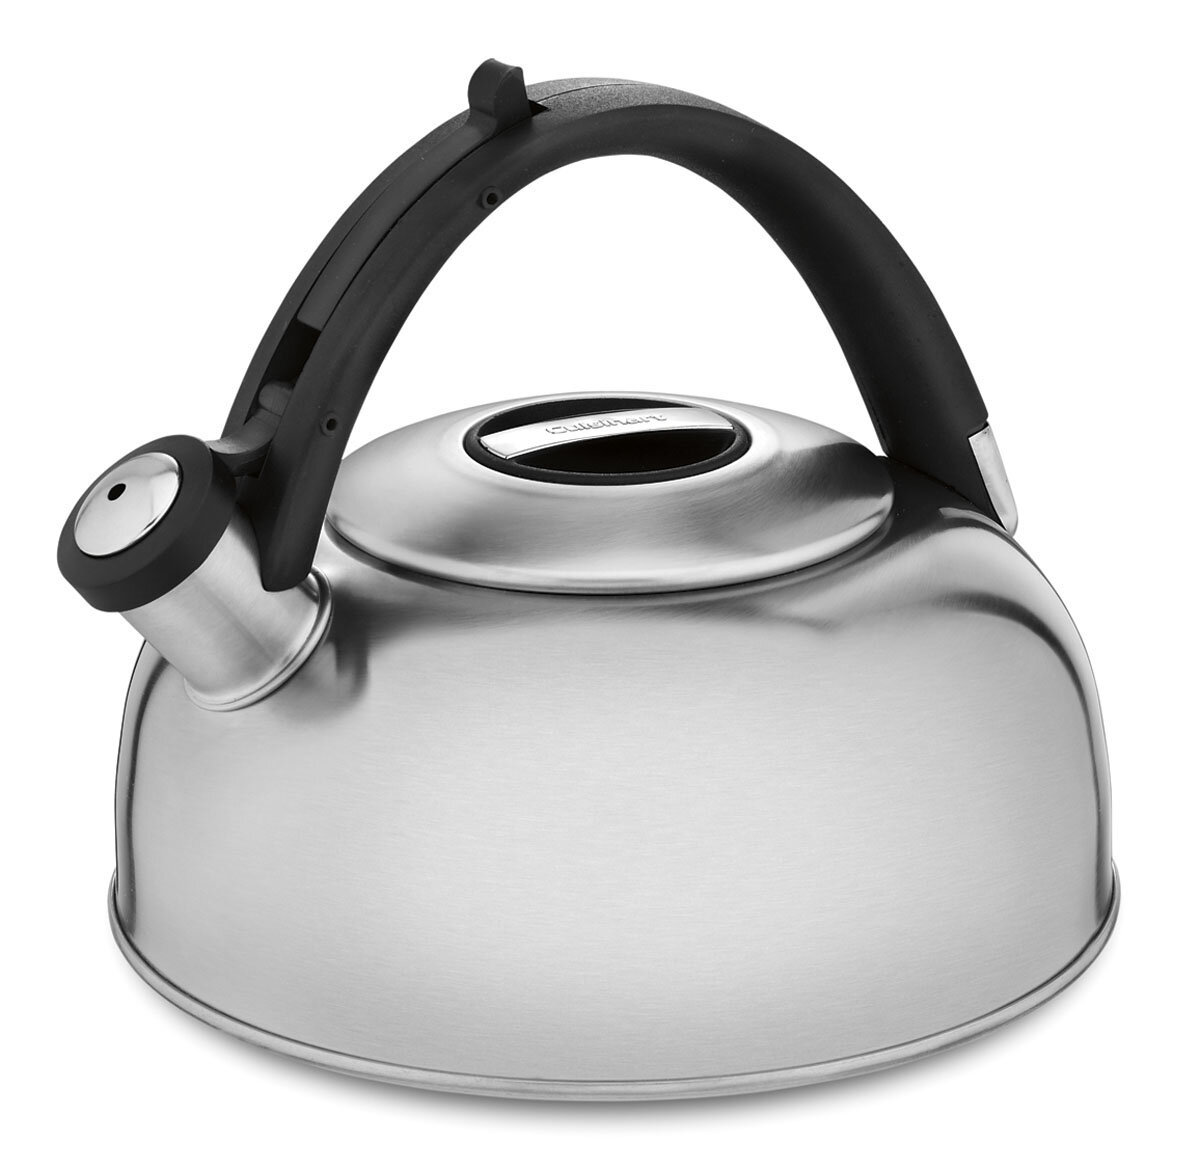 Farberware Stainless Steel Egg-Shaped Whistling Tea Kettle, 2.3-Quart - Silver